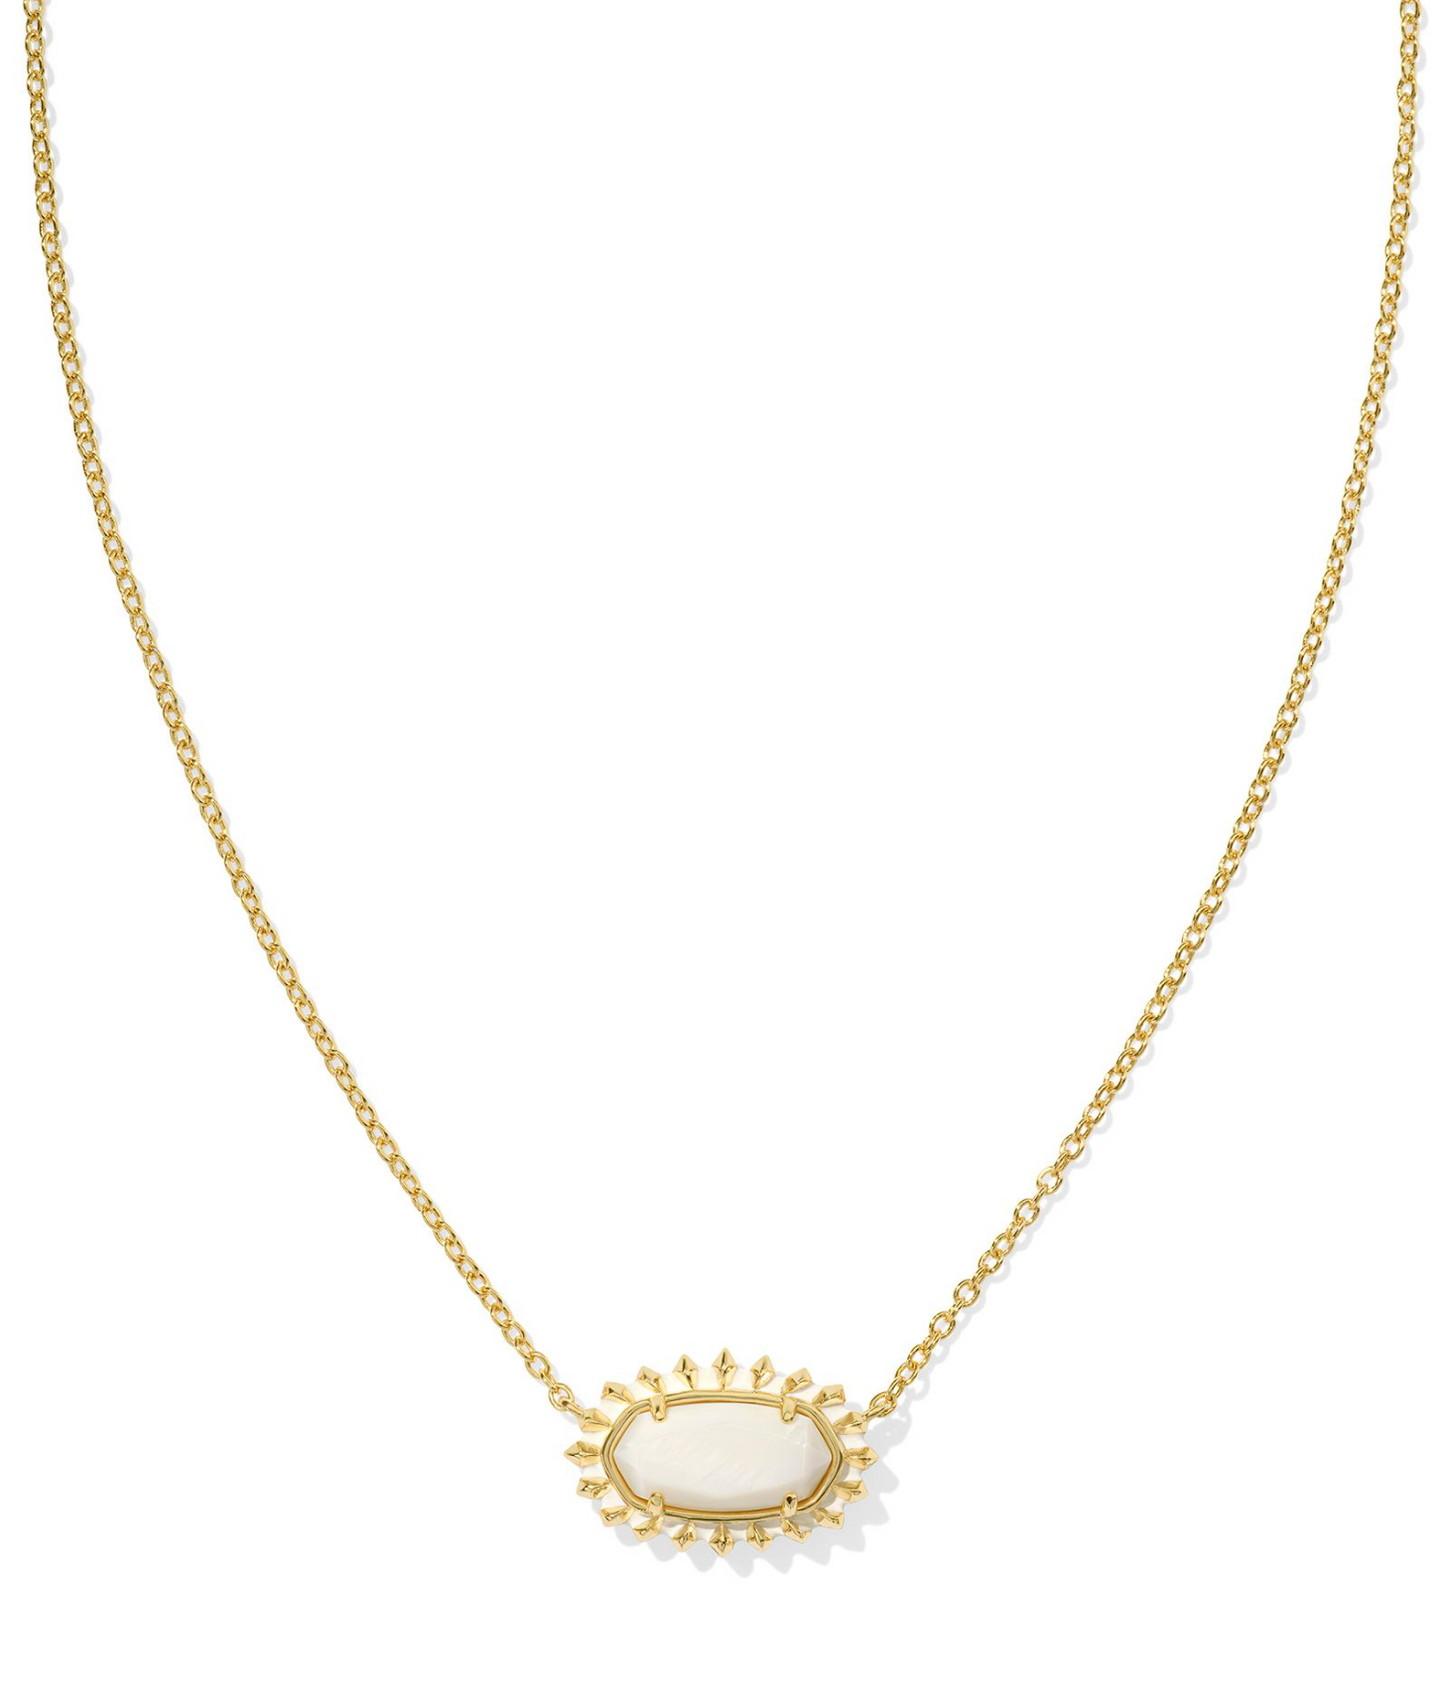 Elisa Gold Color Burst Frame Short Pendant Necklace in White Mother-of-Pearl | KENDRA SCOTT